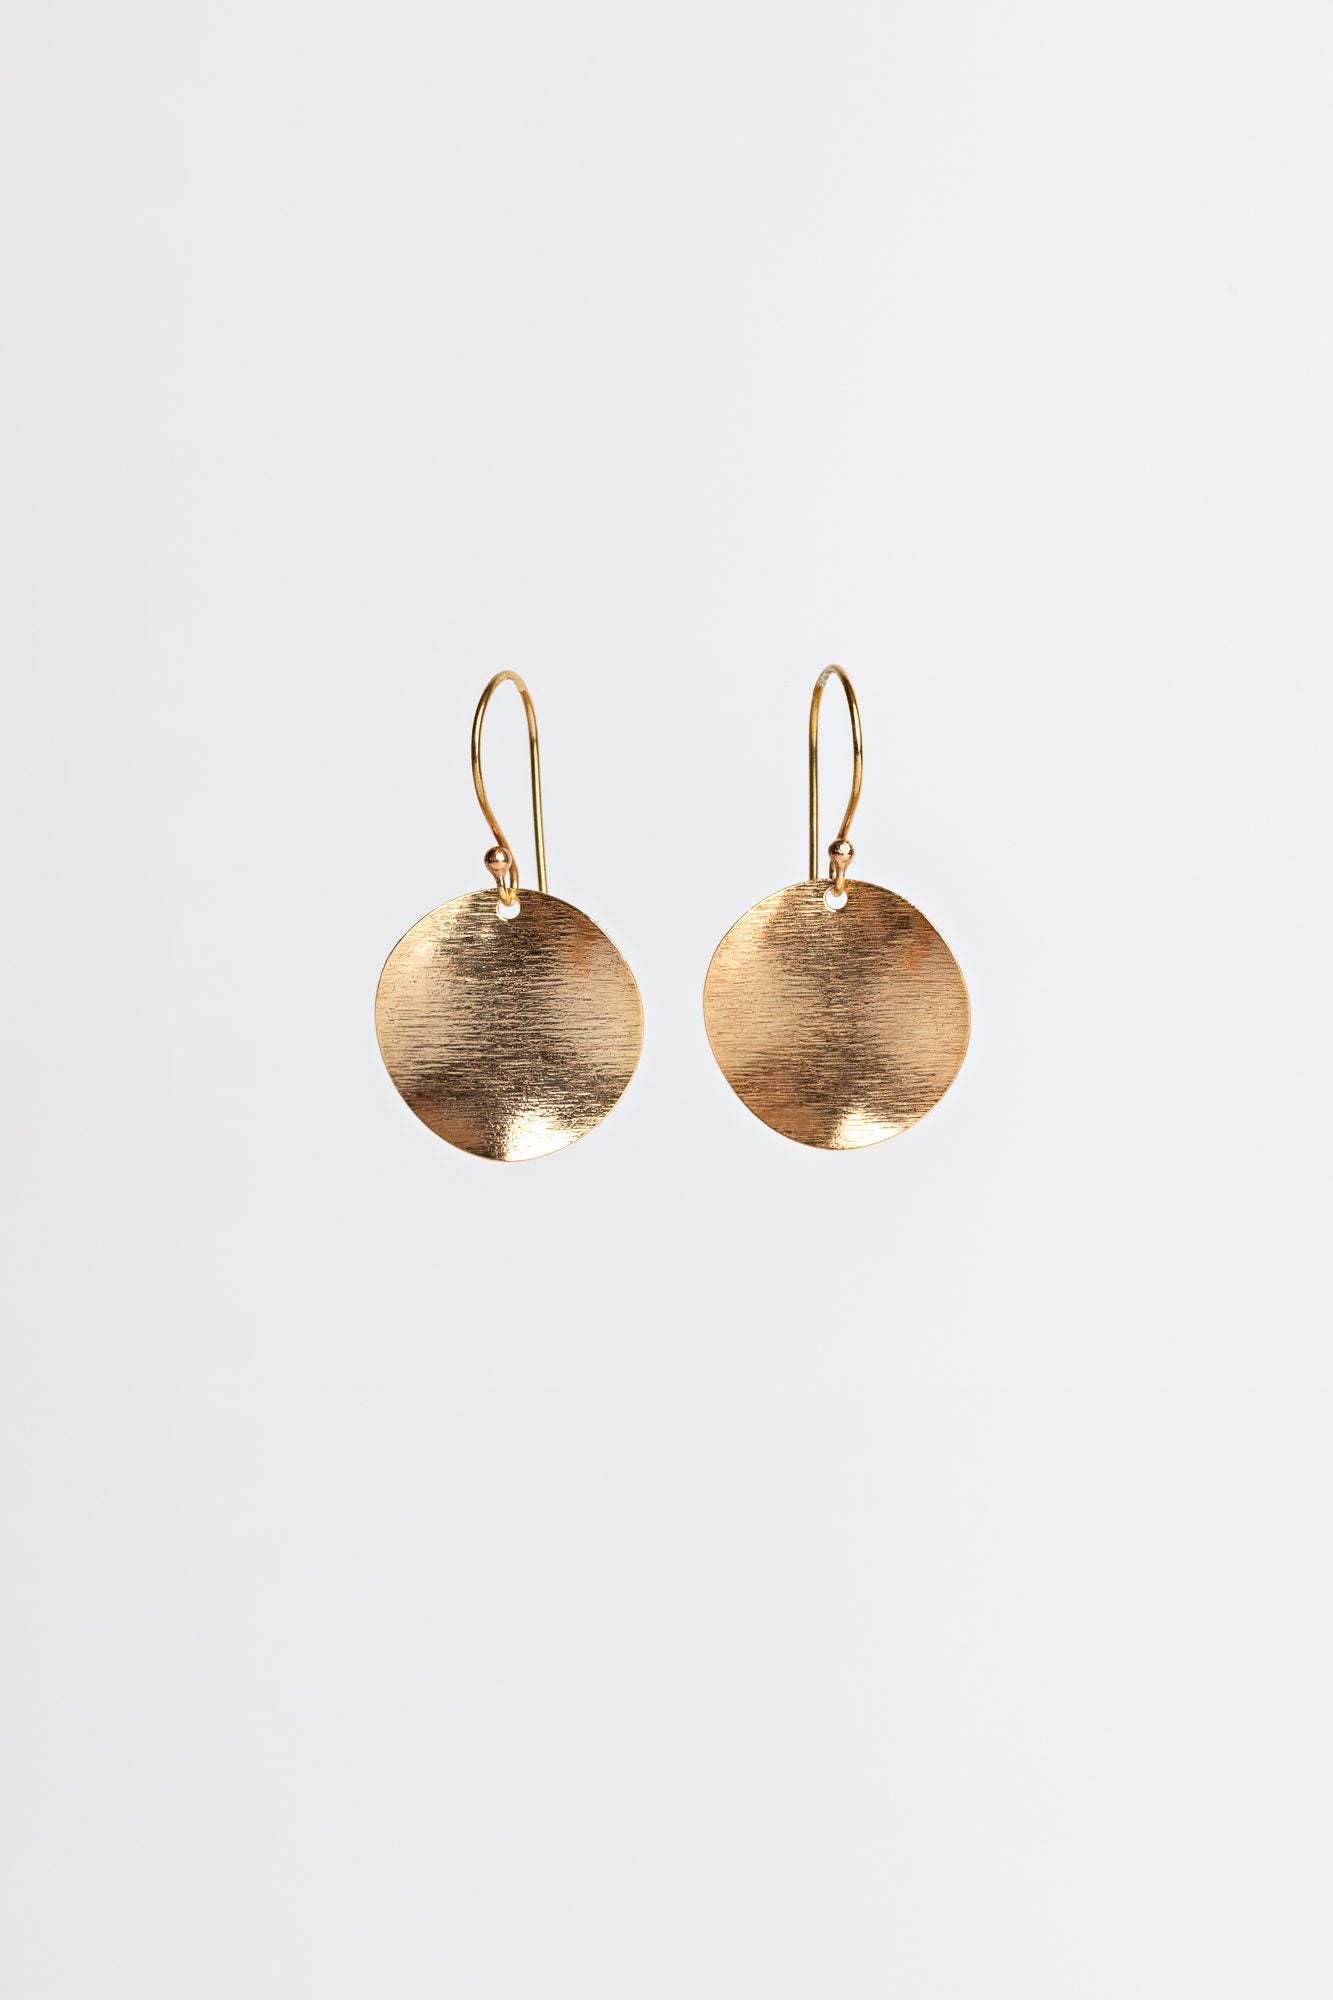 Rachel Gold Earrings